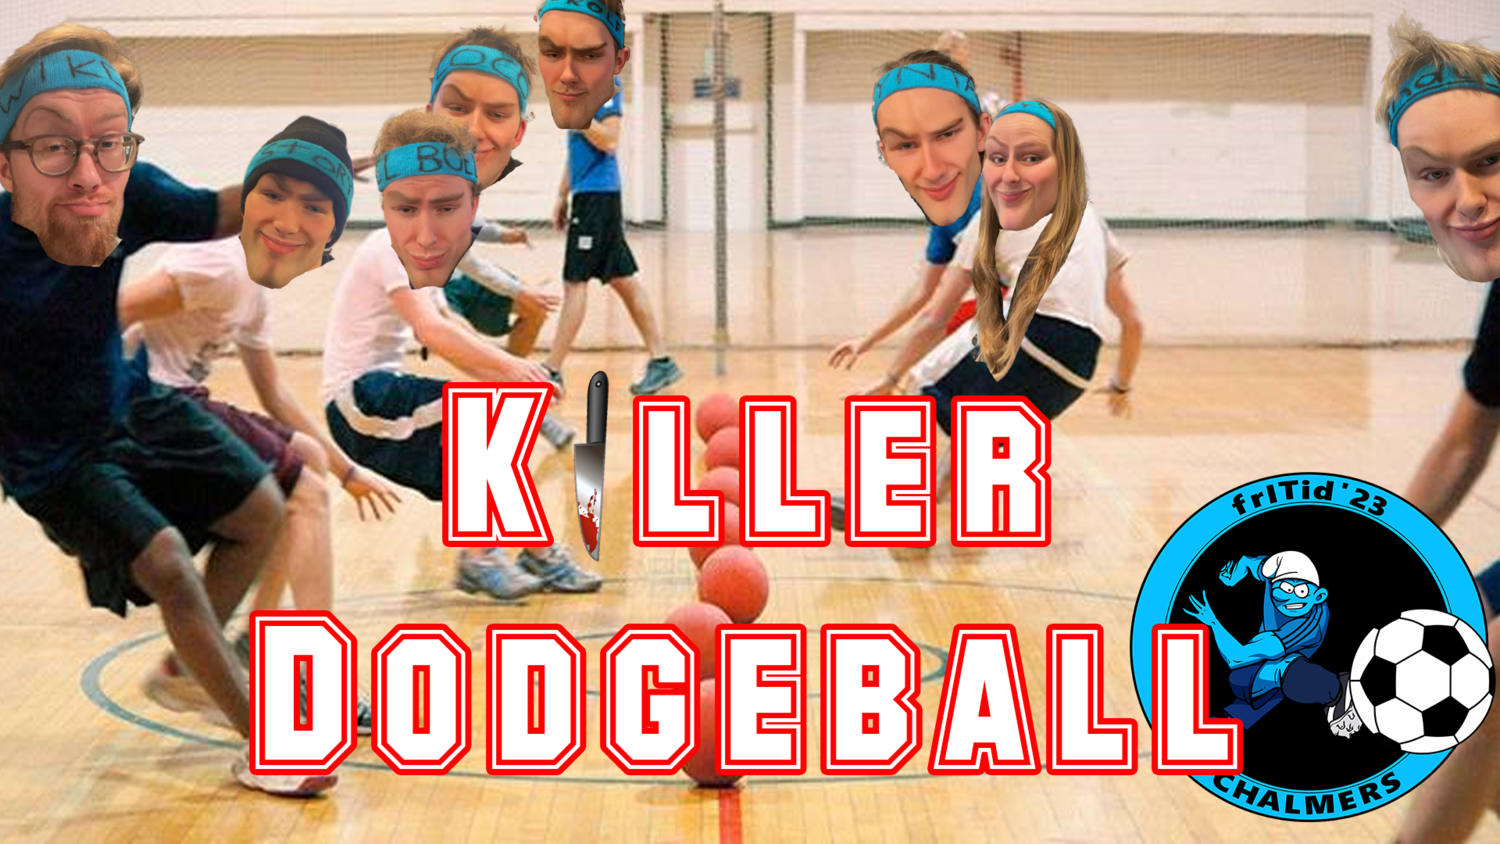 Killer-dodgeball PR